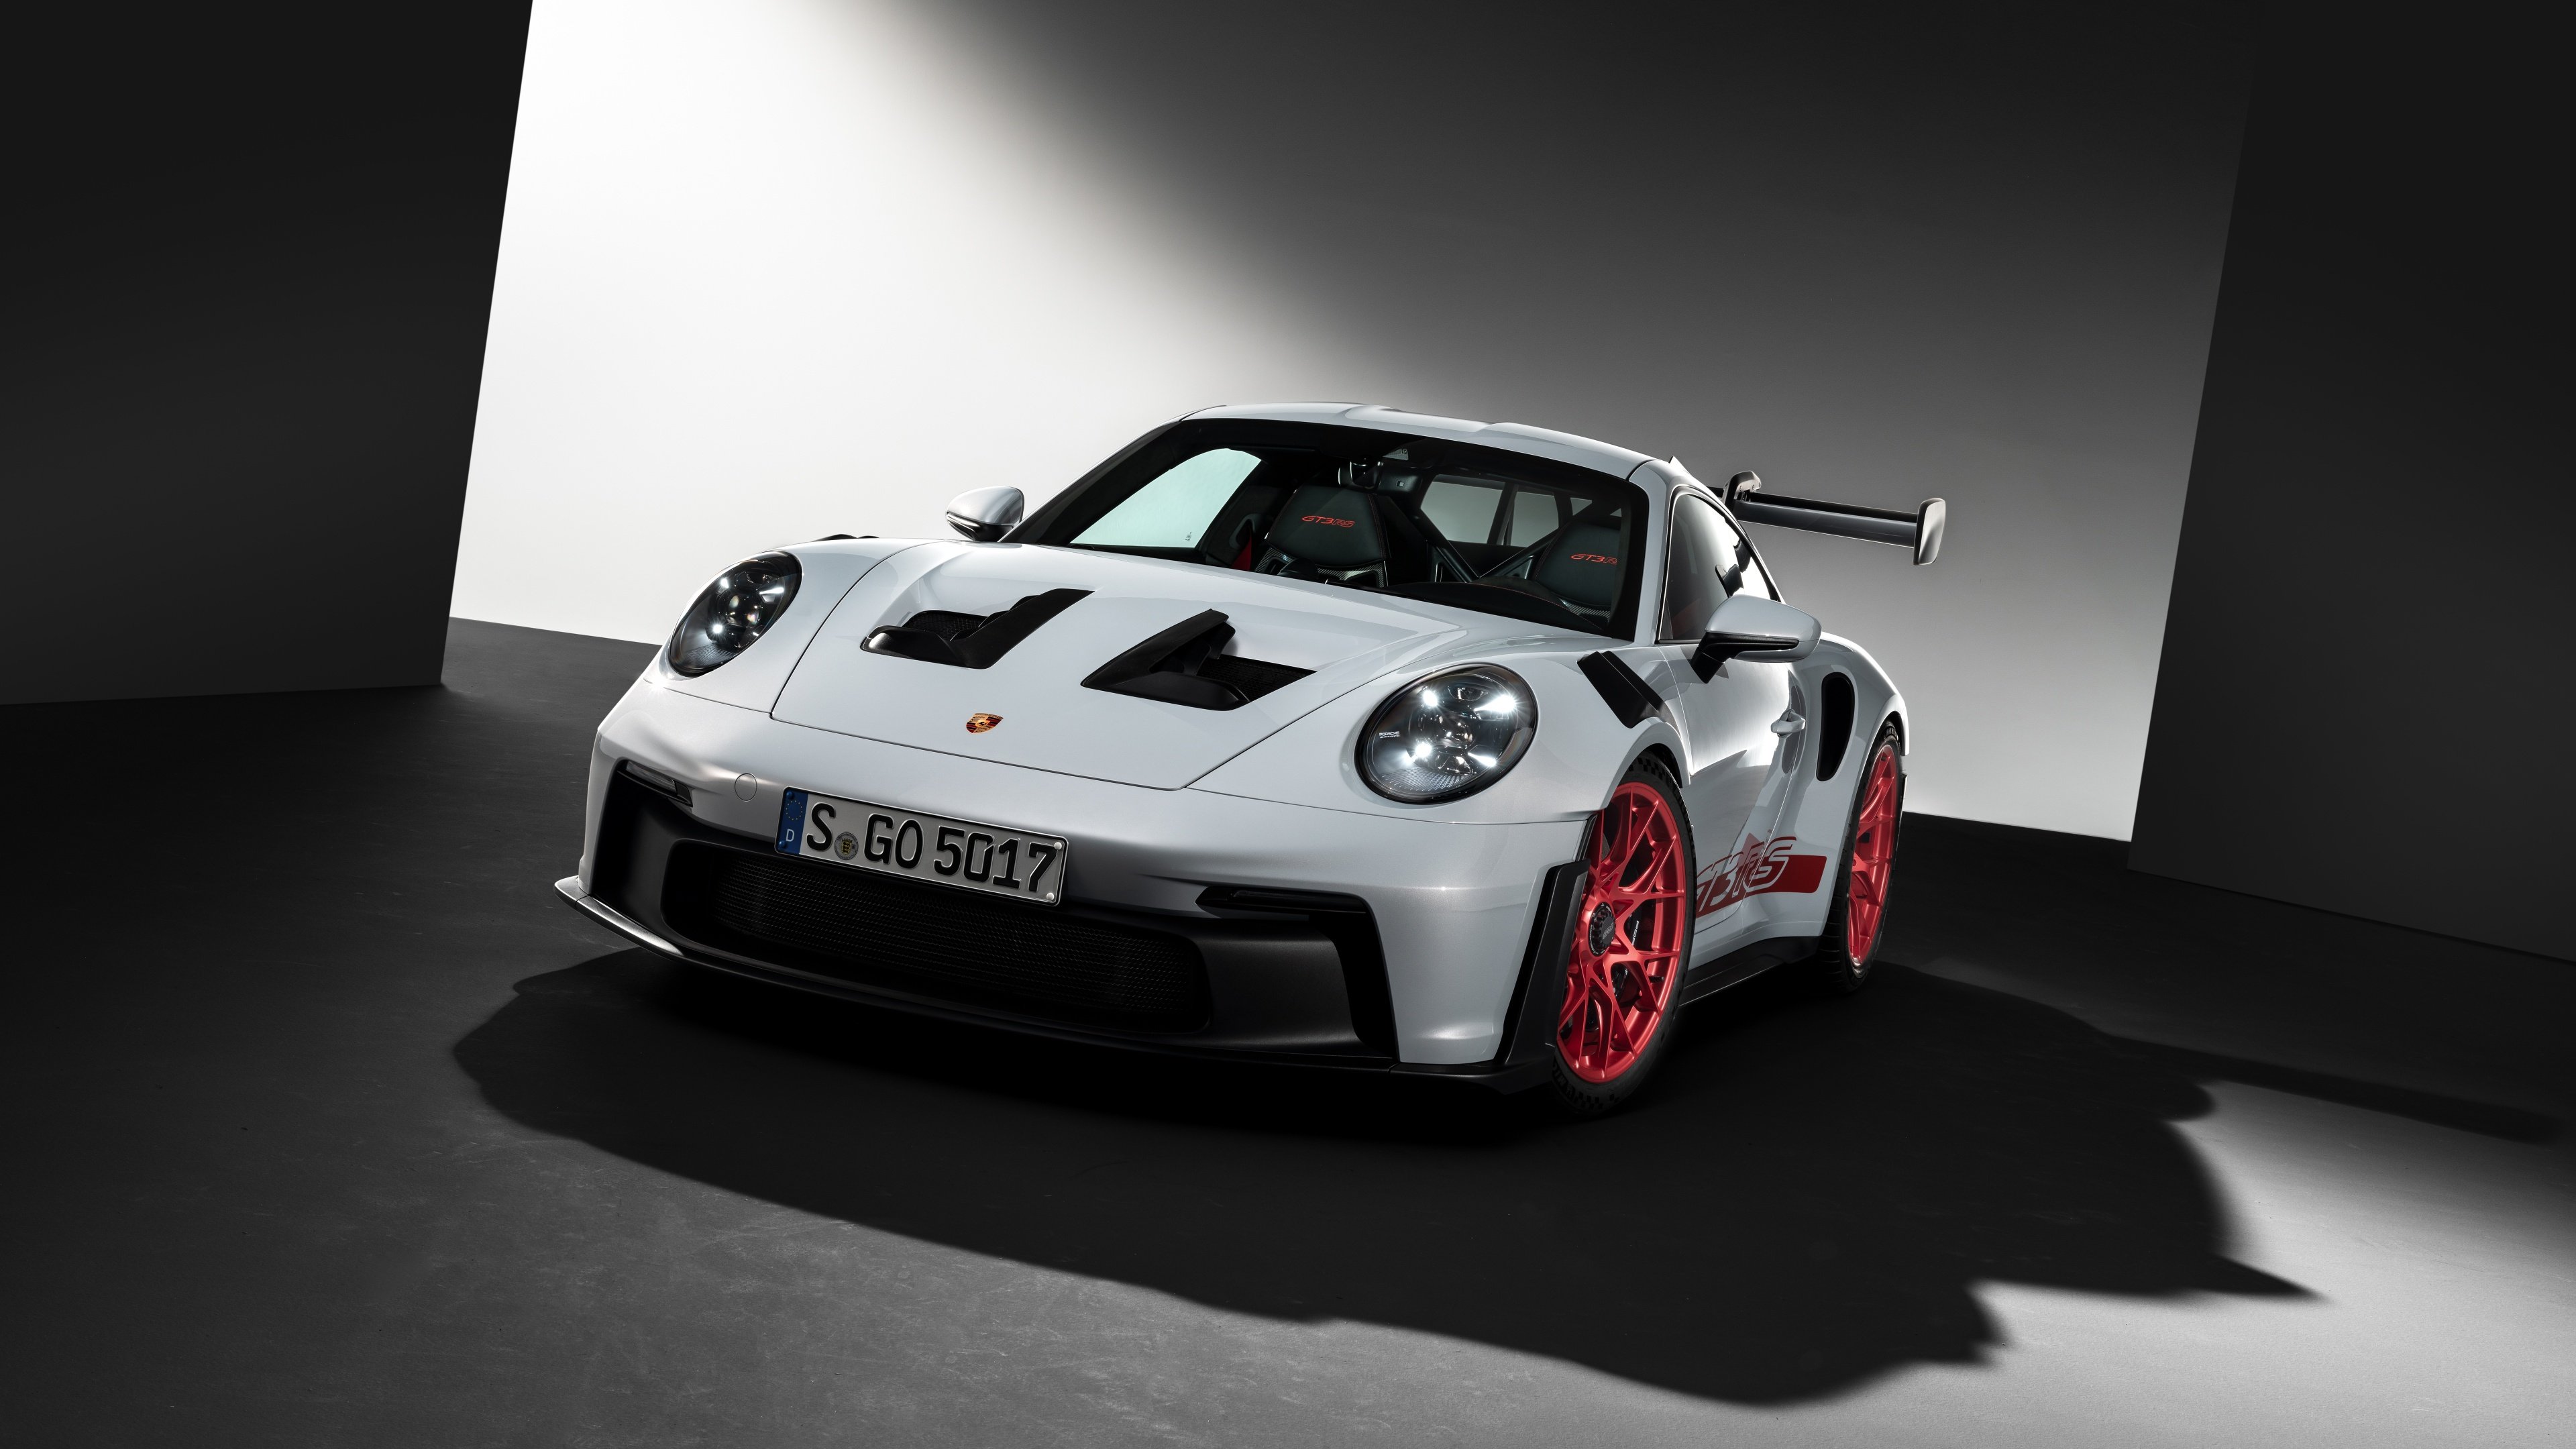 Porsche 911 GT3 RS Wallpaper 4K, 5K, 8K, Cars